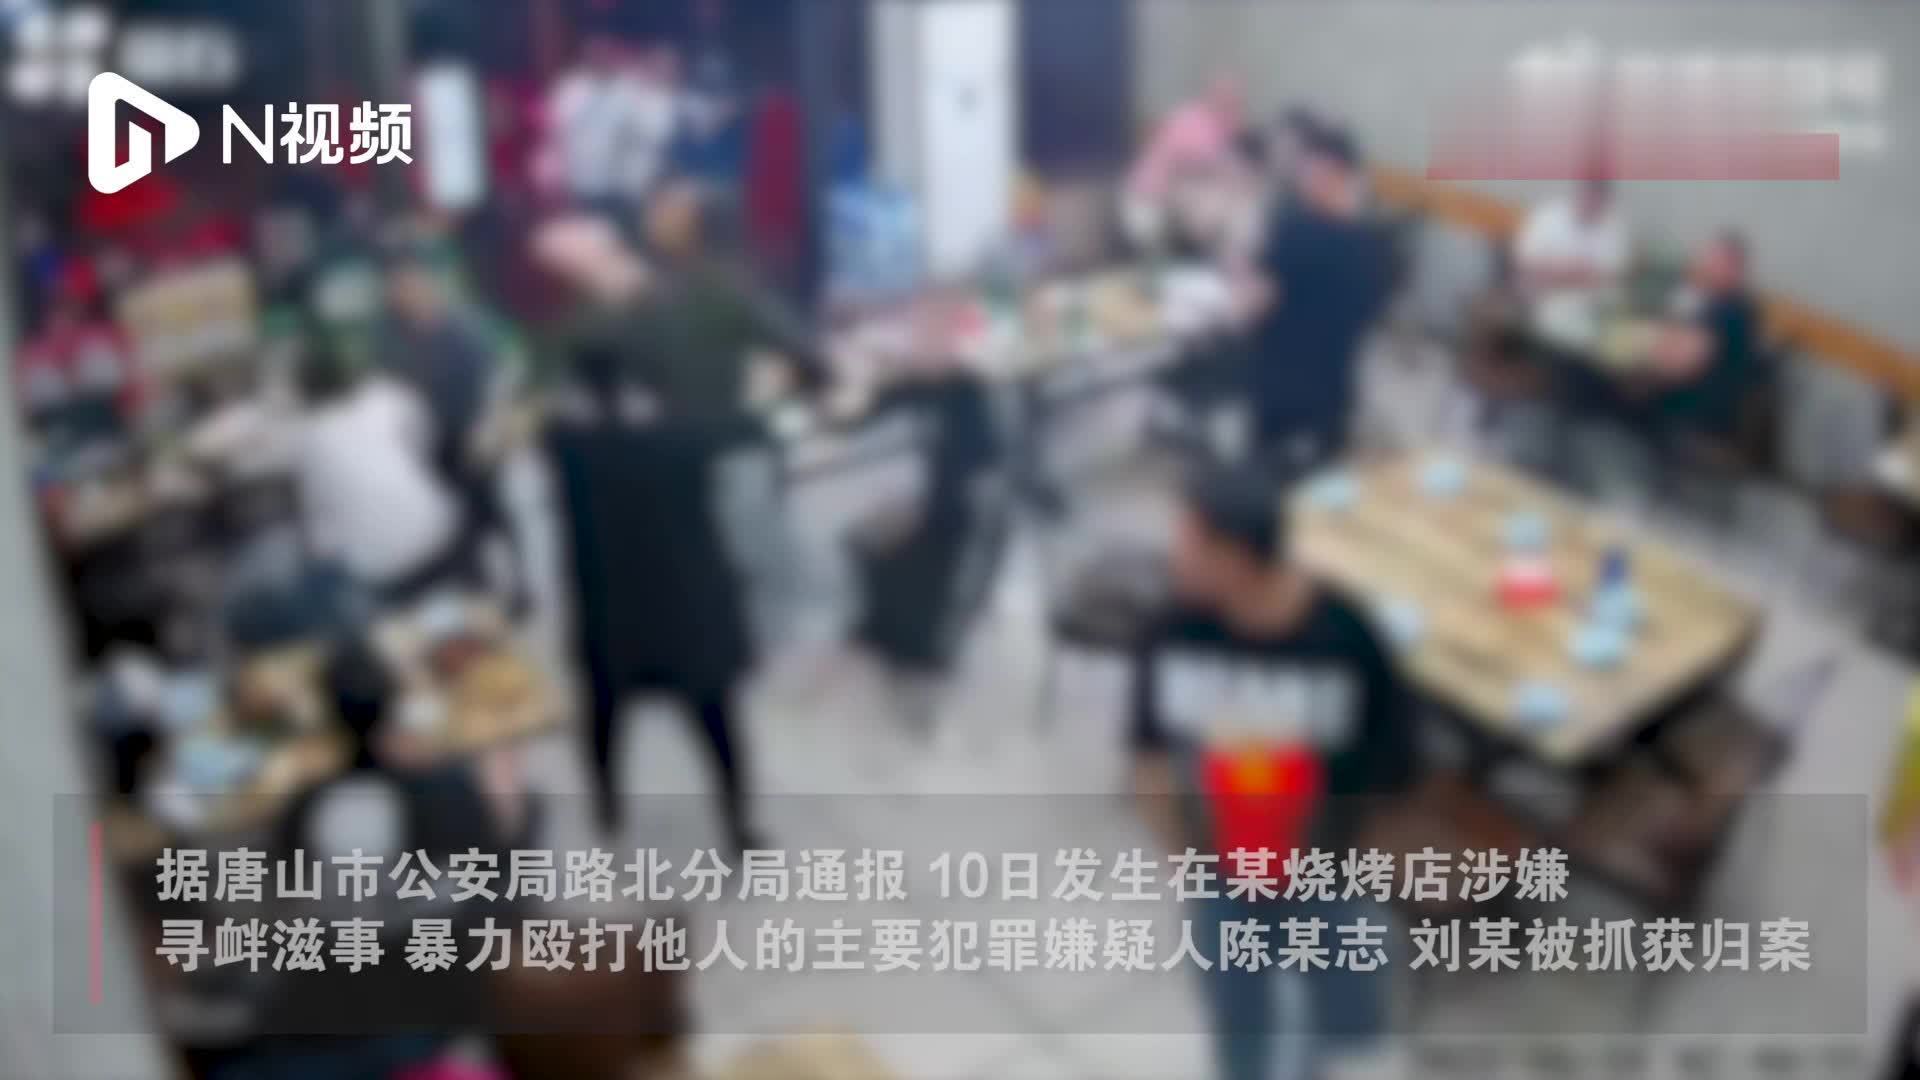 唐山烧烤店打人事件2名主要嫌犯被抓获，受伤女子正接受治疗